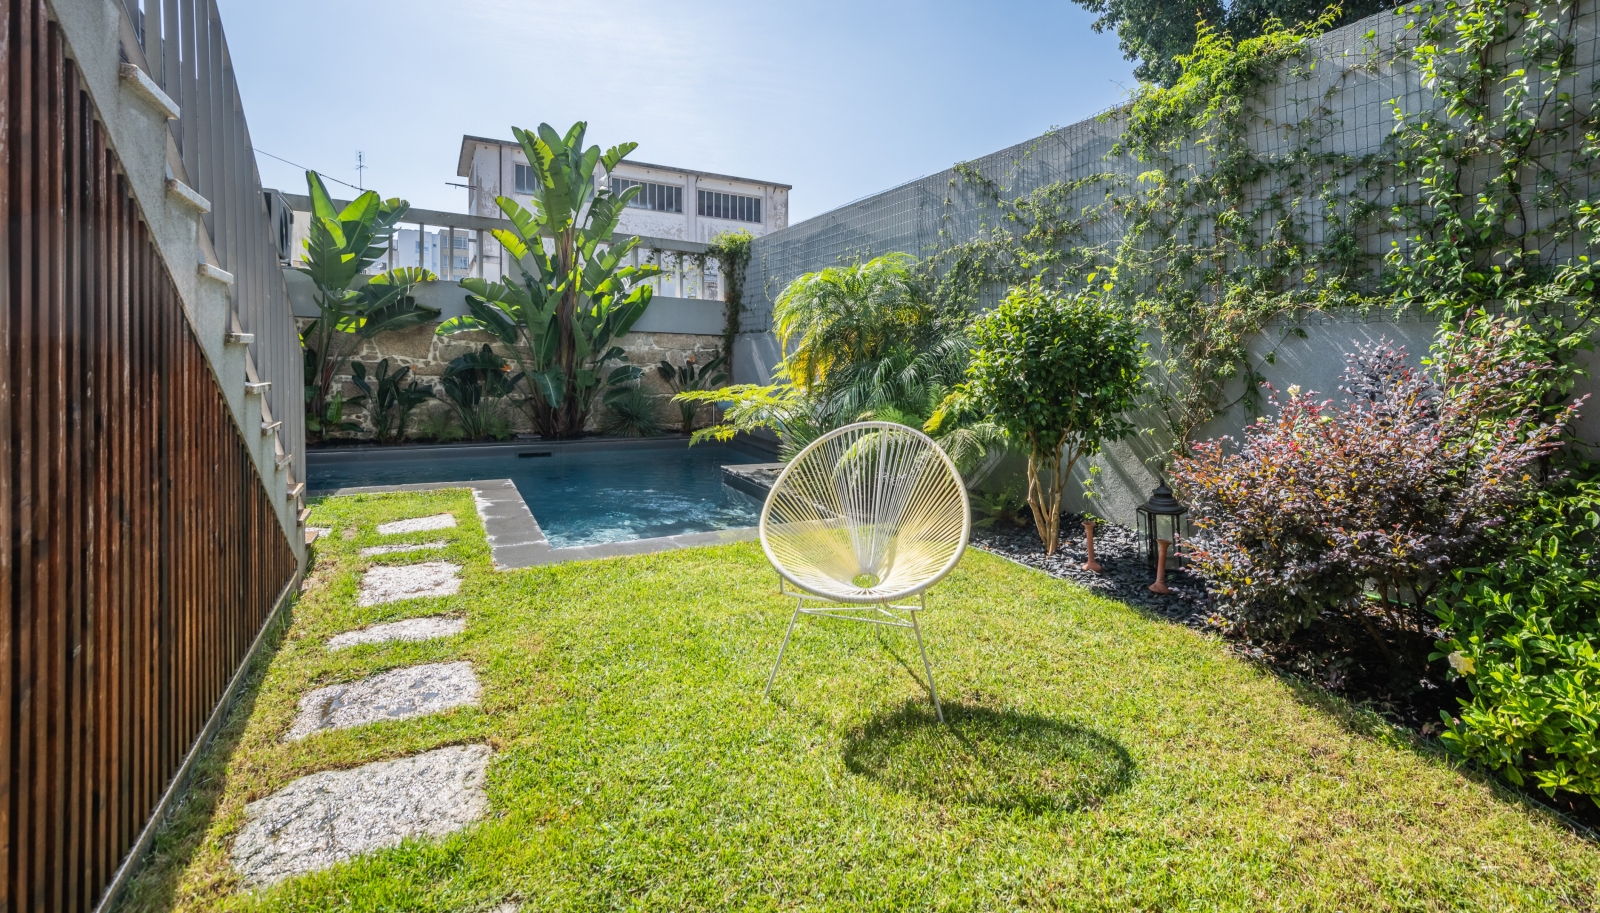 Moradia de luxo, à venda, com jardim e piscina no centro do Porto_240679